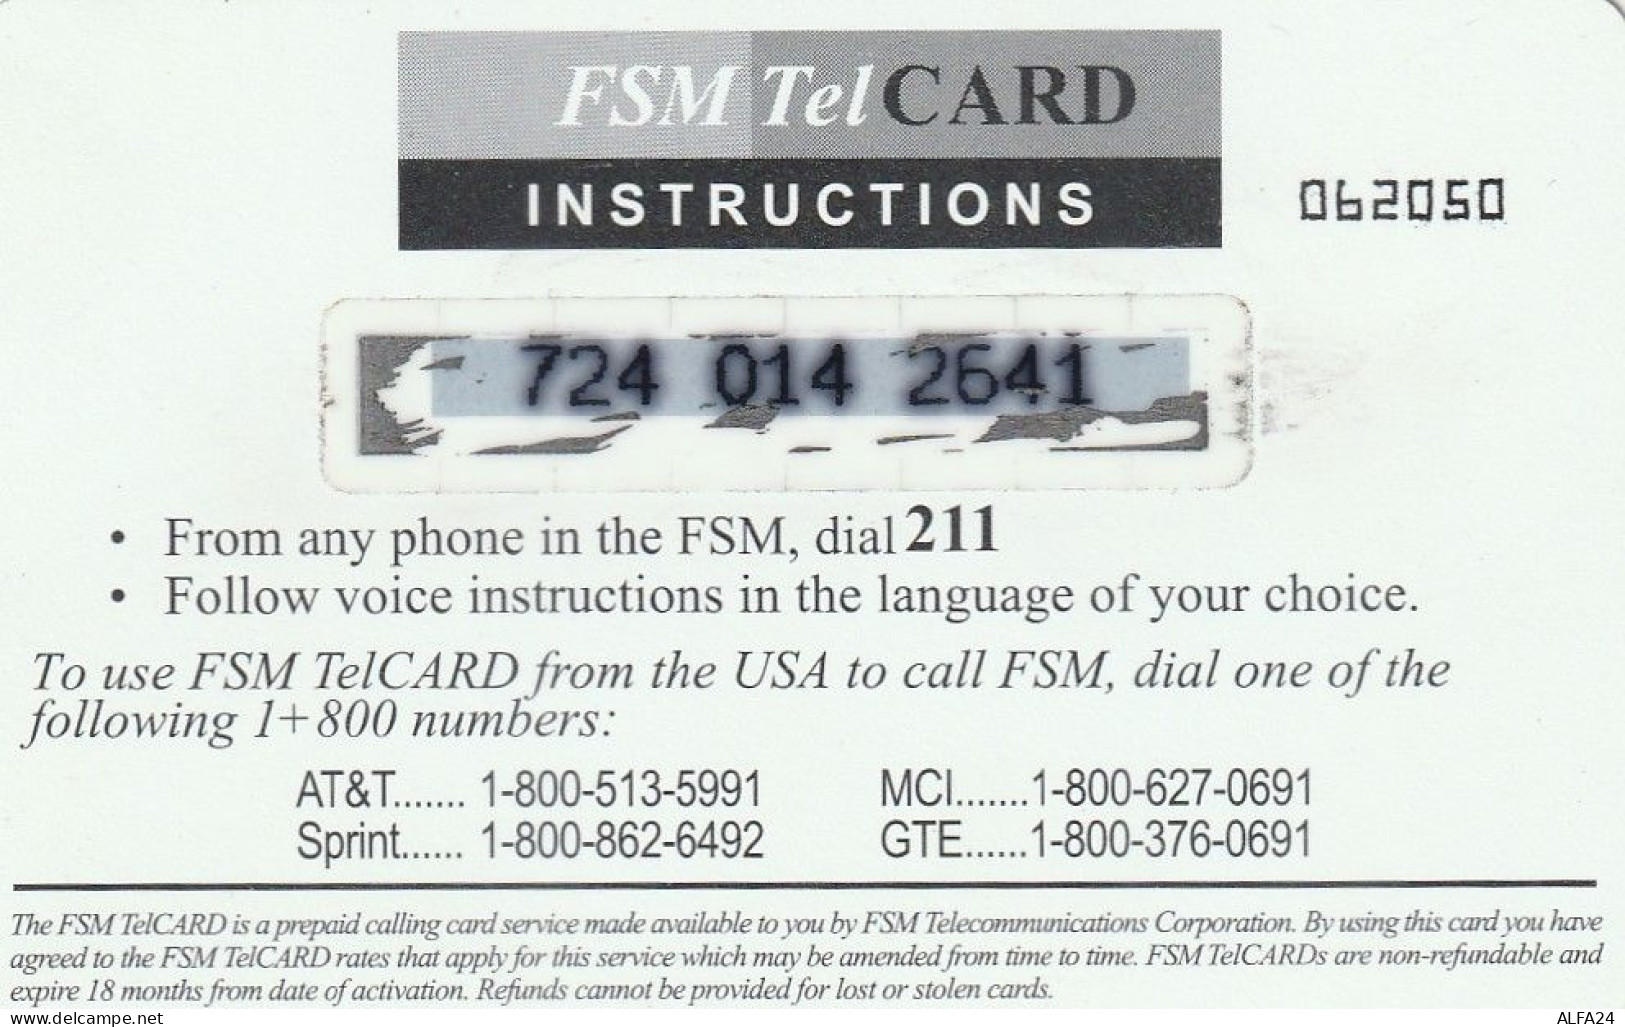 PREPAID PHONE CARD MICRONESIA  (E5.20.4 - Mikronesien